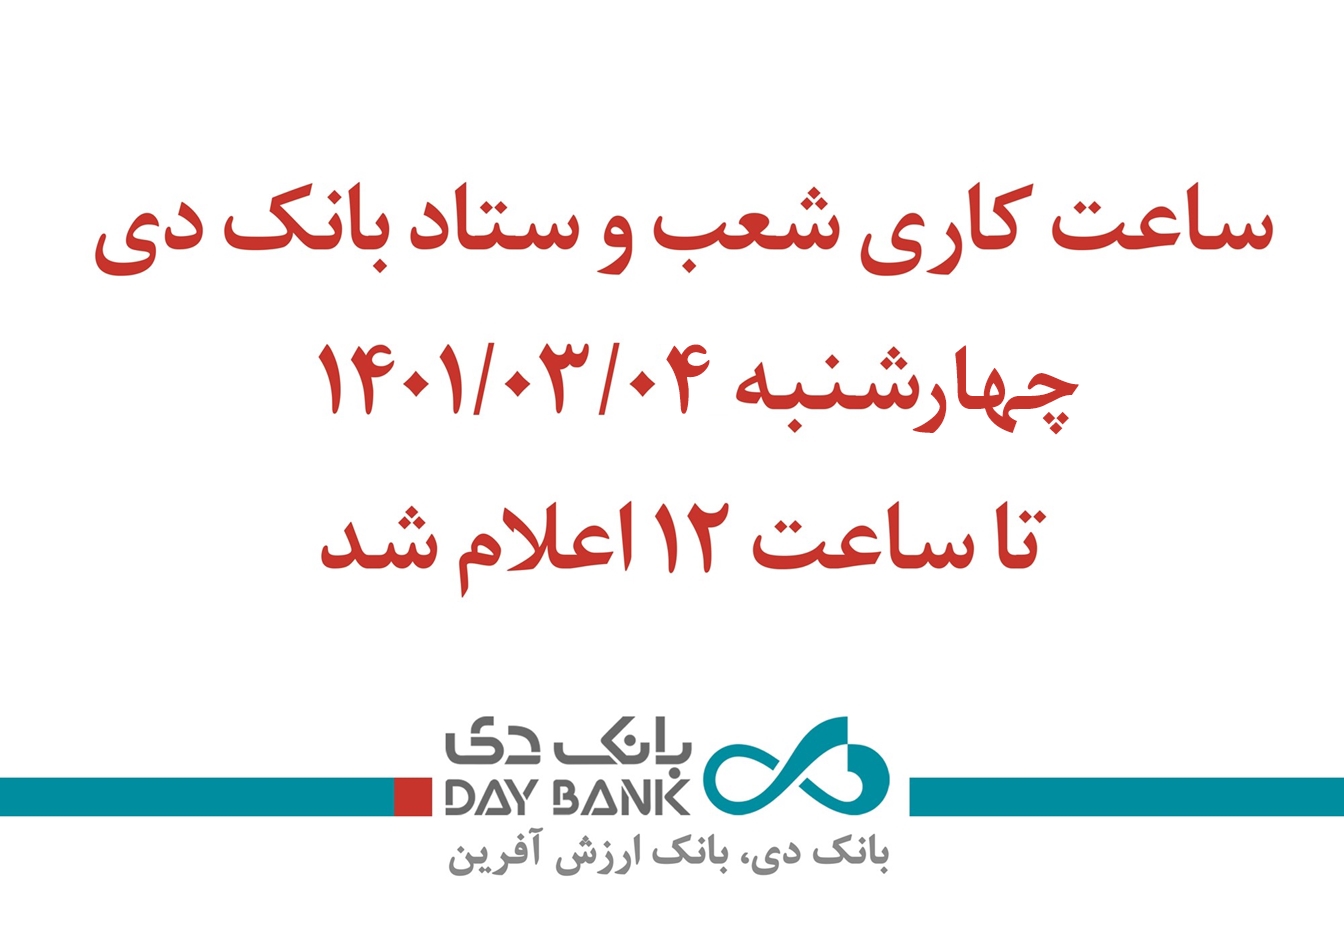 تجارت گردان | اعلام ساعت کاری بانک دی در استان تهران و البرز در روز چهارشنبه چهارم خرداد ماه